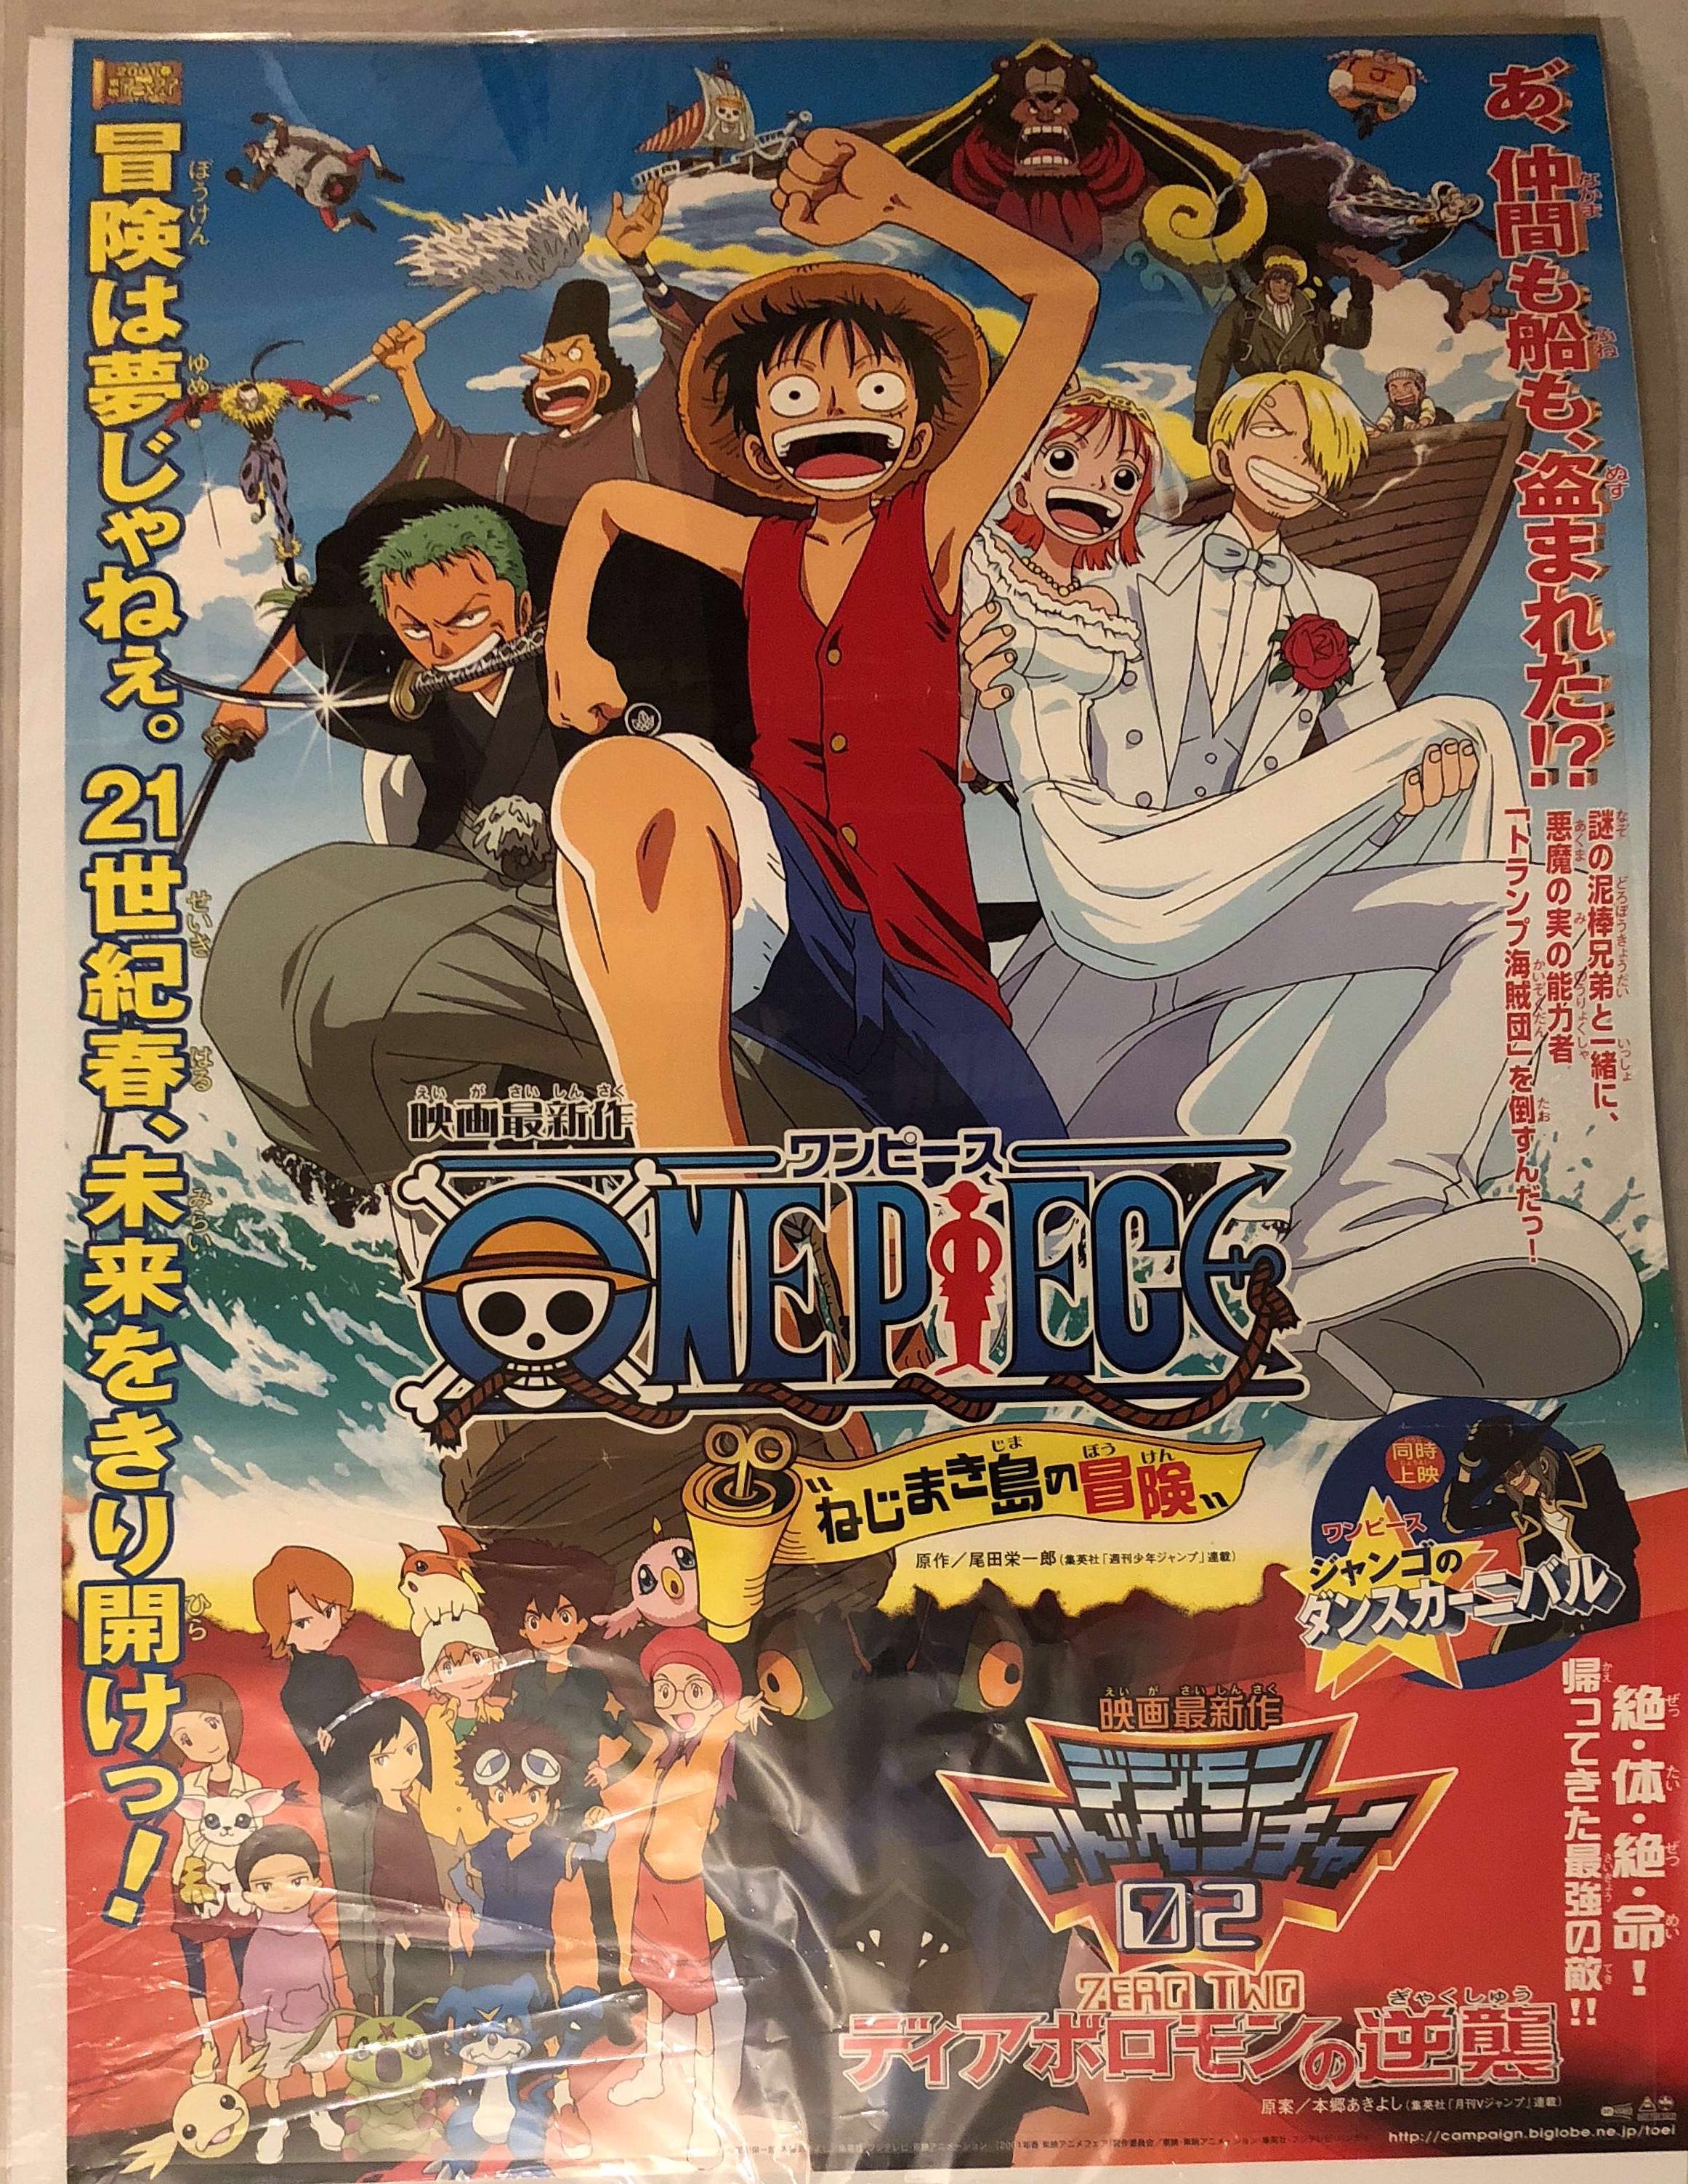 東映 劇場用 One Piece ねじまき島の冒険 デジモンアドベンチャー02 B2ポスター まんだらけ Mandarake